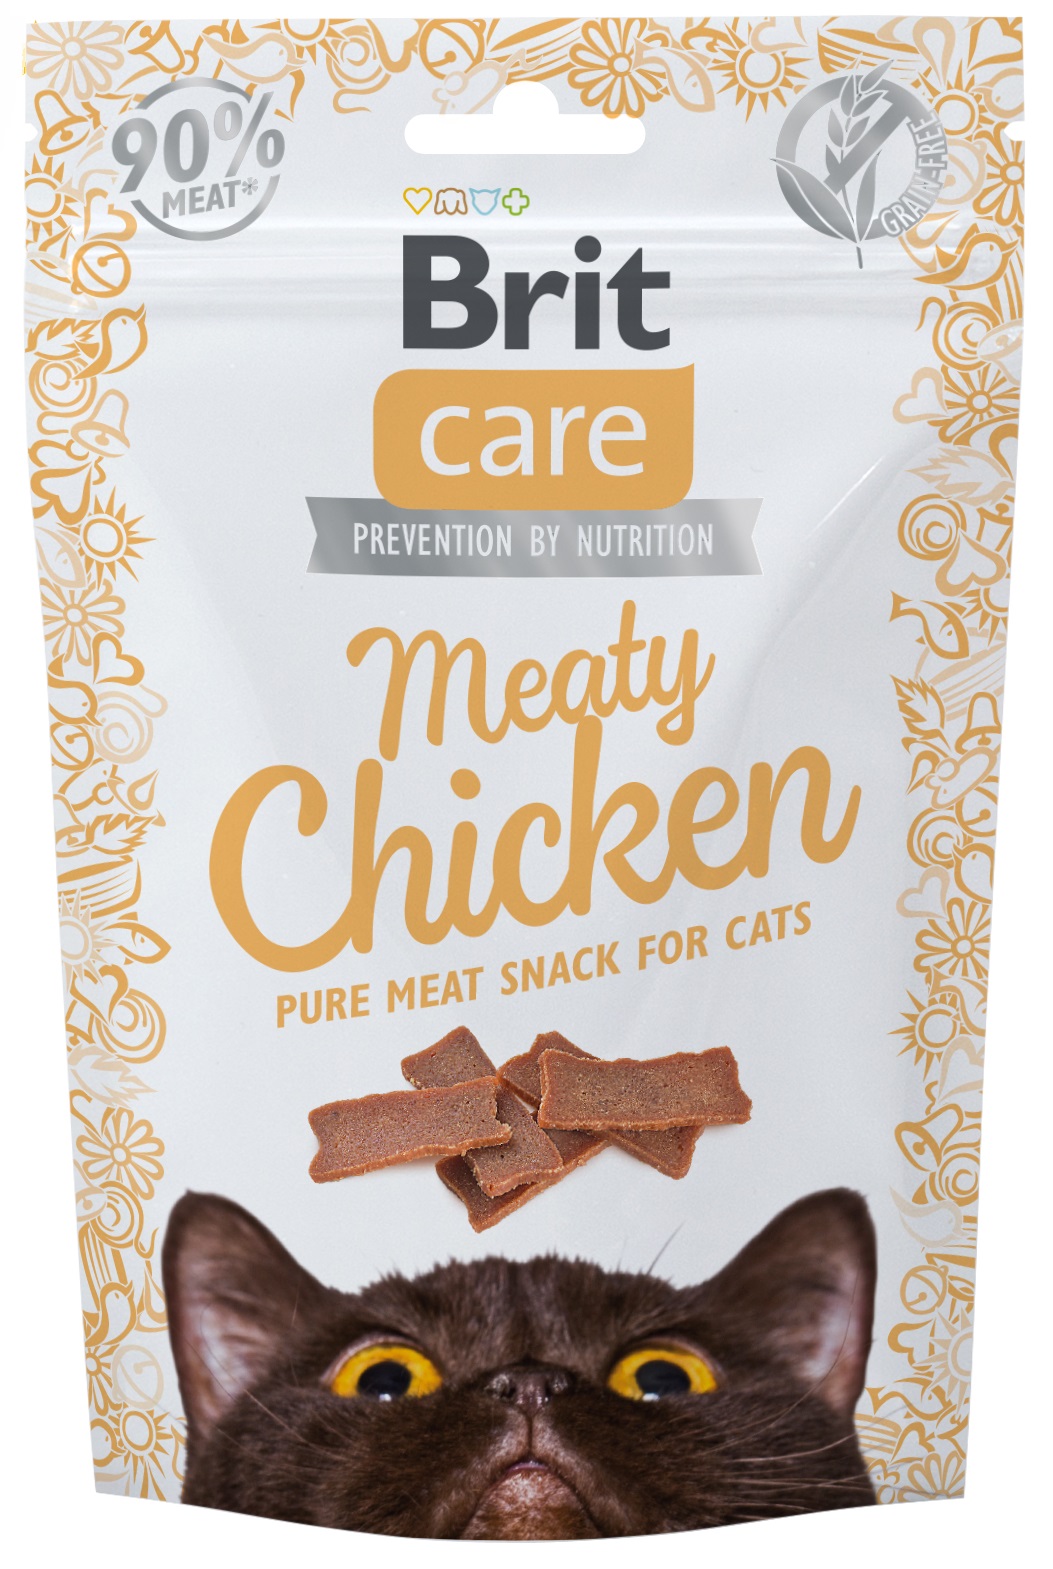 Brit Care Meaty Chicken kuřecí plátky - pamlsky pro kočky 50 g